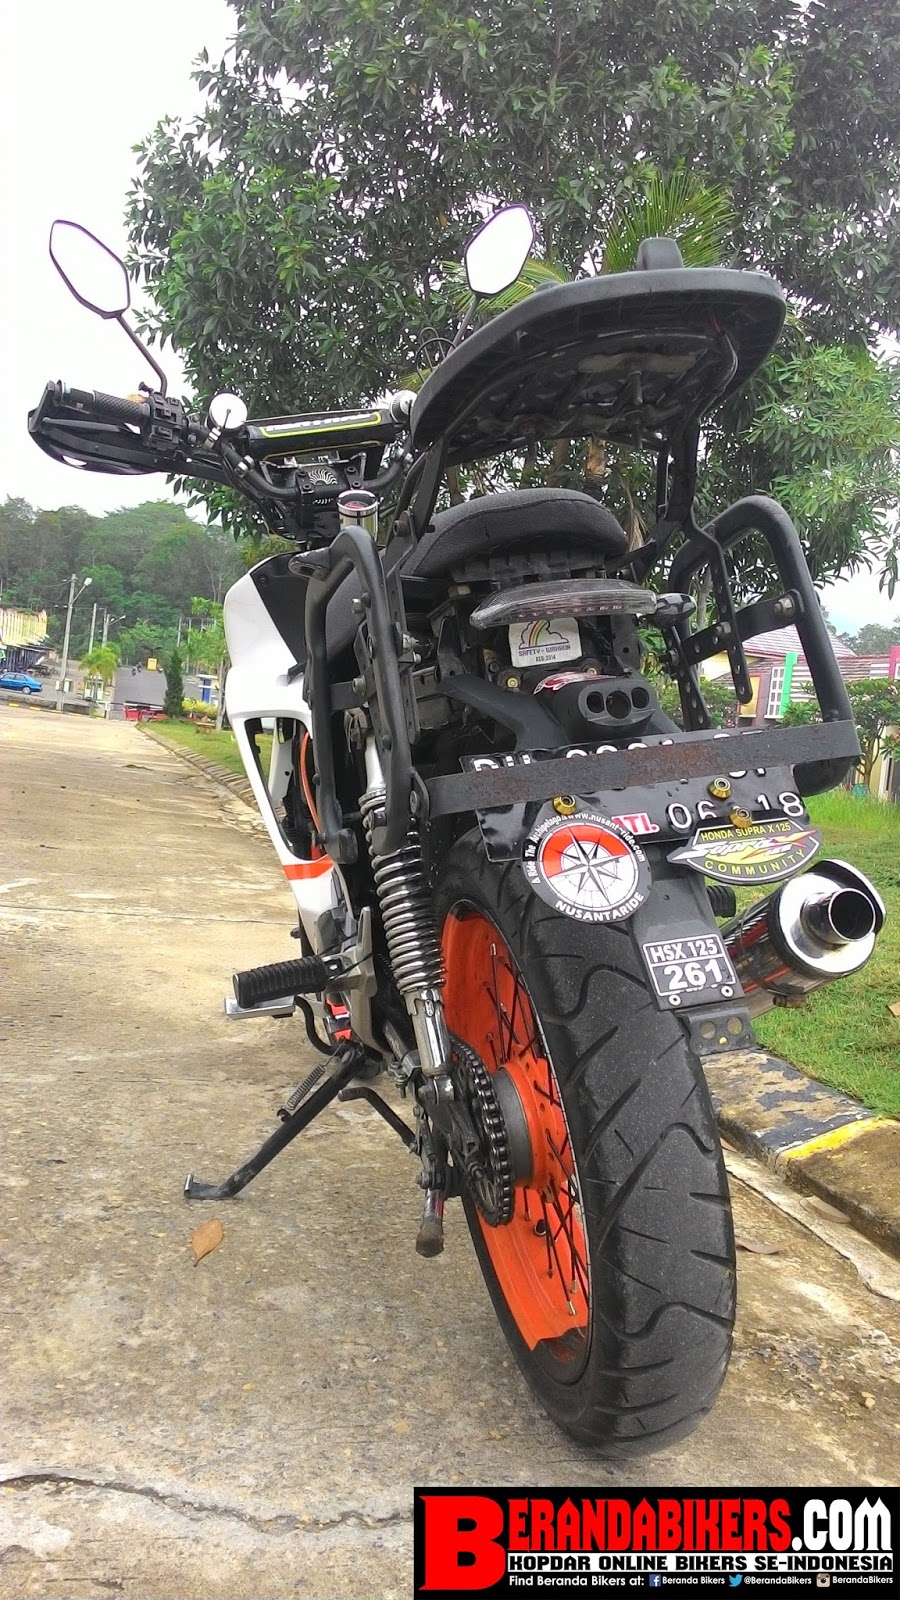 BerandaBikerscom Kopdar Online Bikers Indonesia Modifikasi Honda